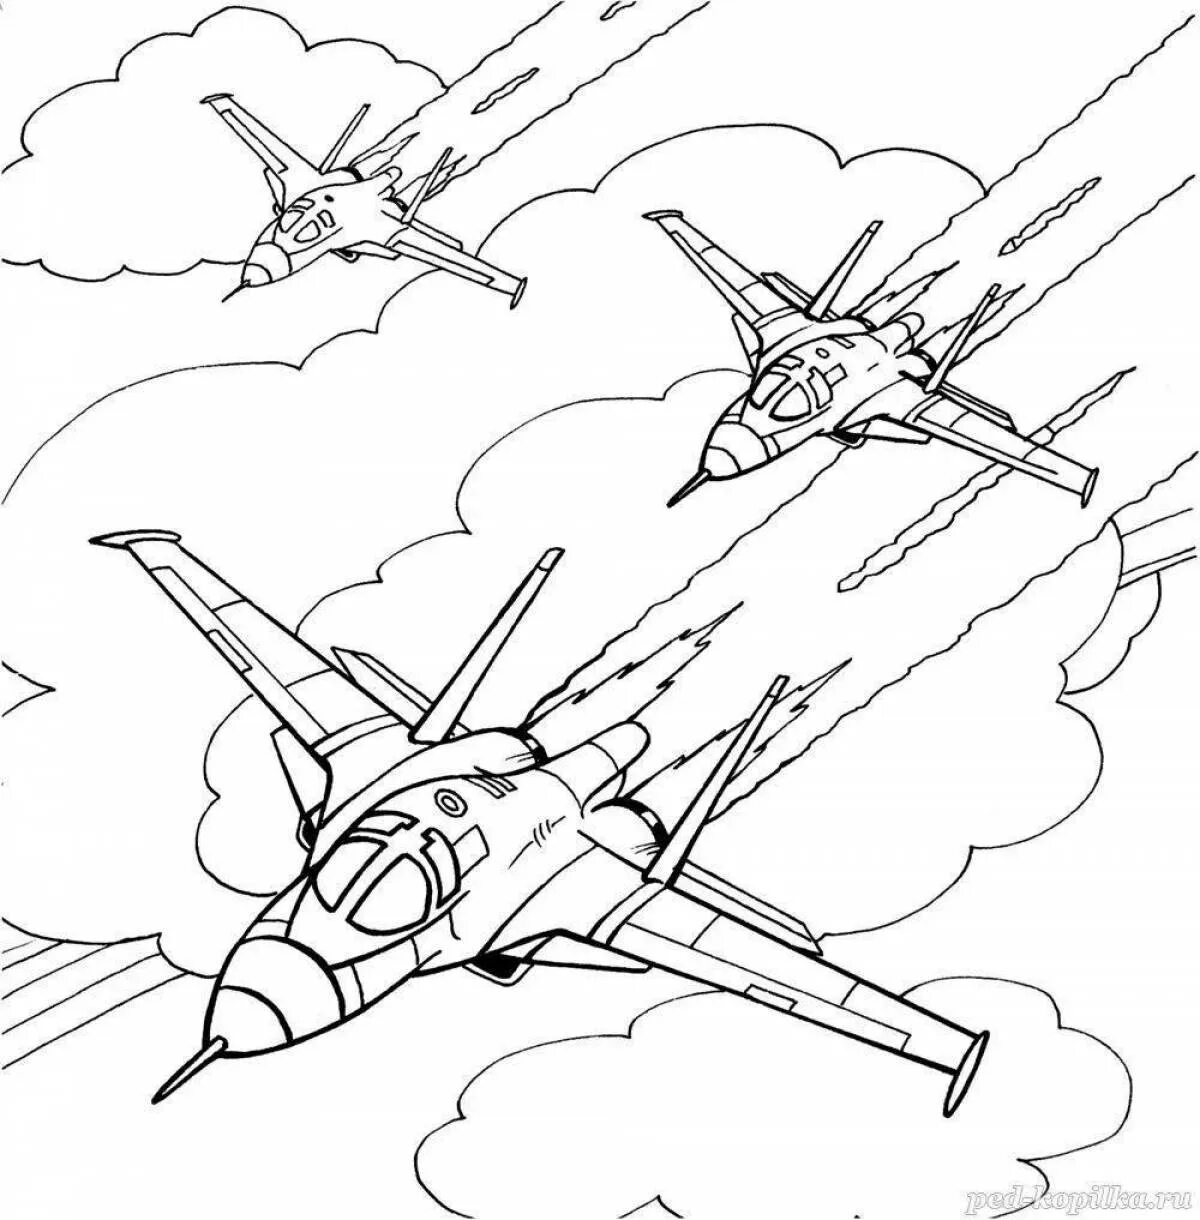 7 май раскраски для детей. Военный самолет раскраска для детей. Эскиз рисунка на военную тему. Военные раскраски для детей 6-7 лет.